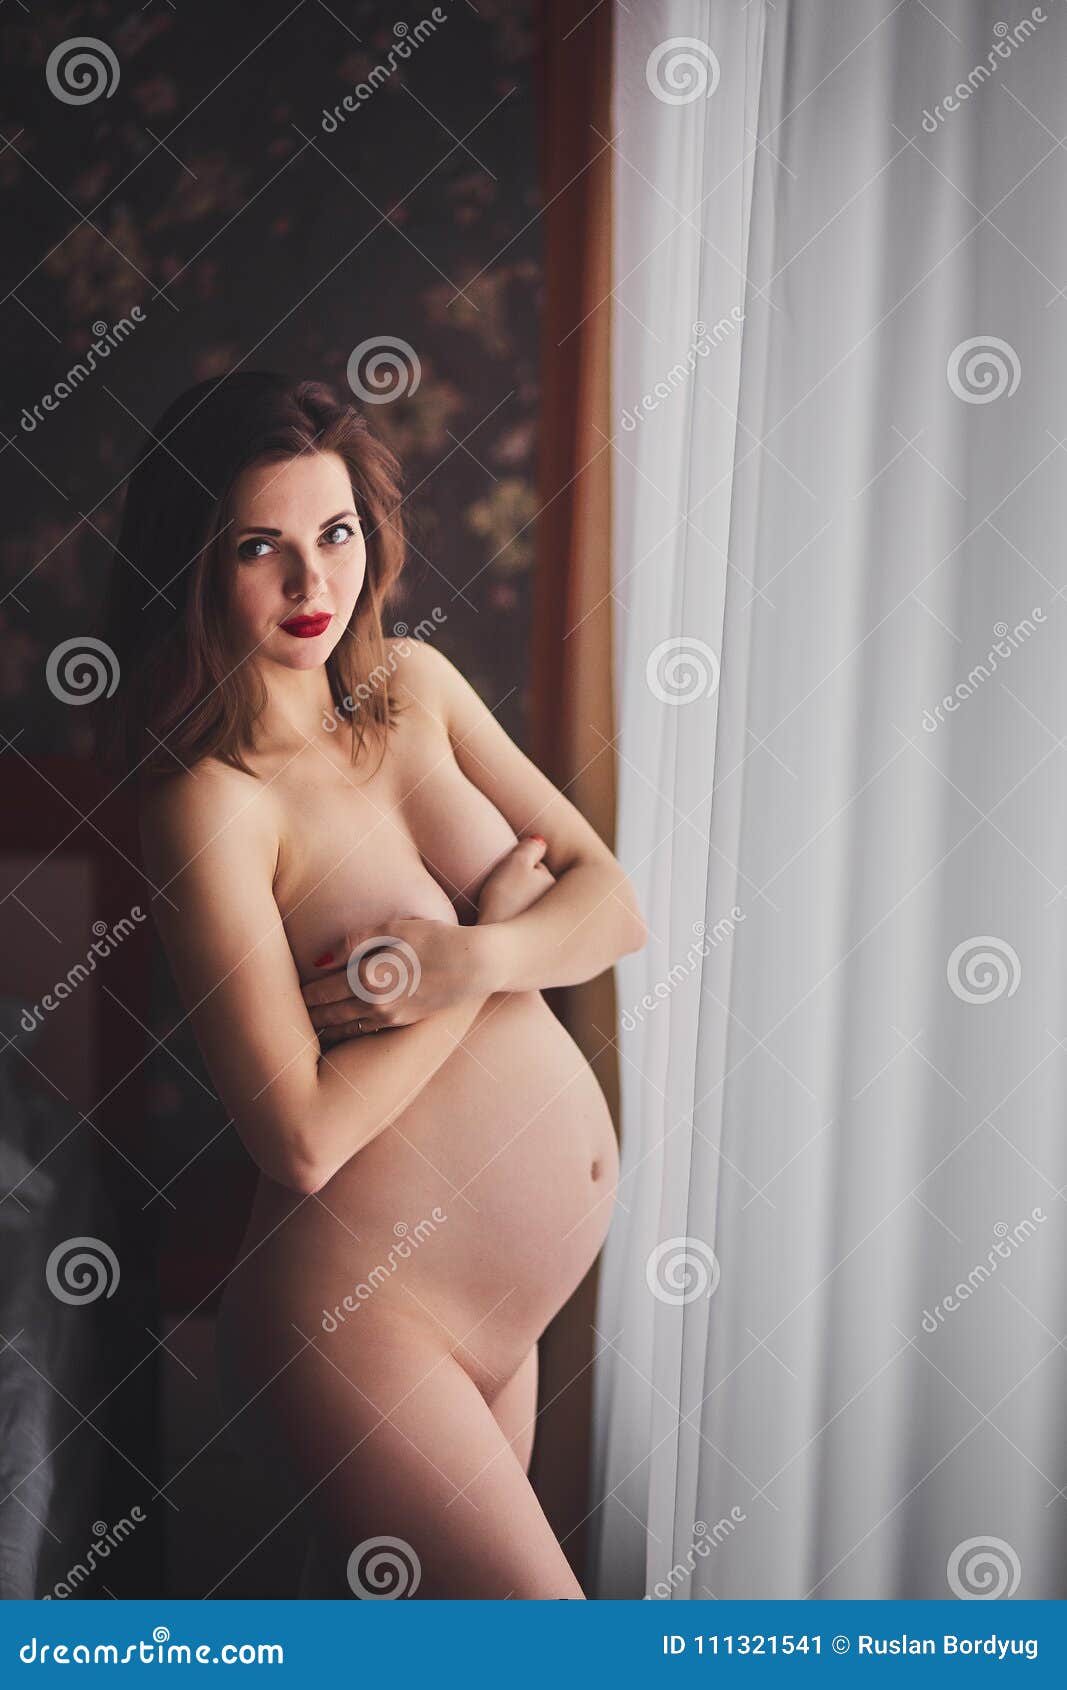 angela marten share nude woman in window